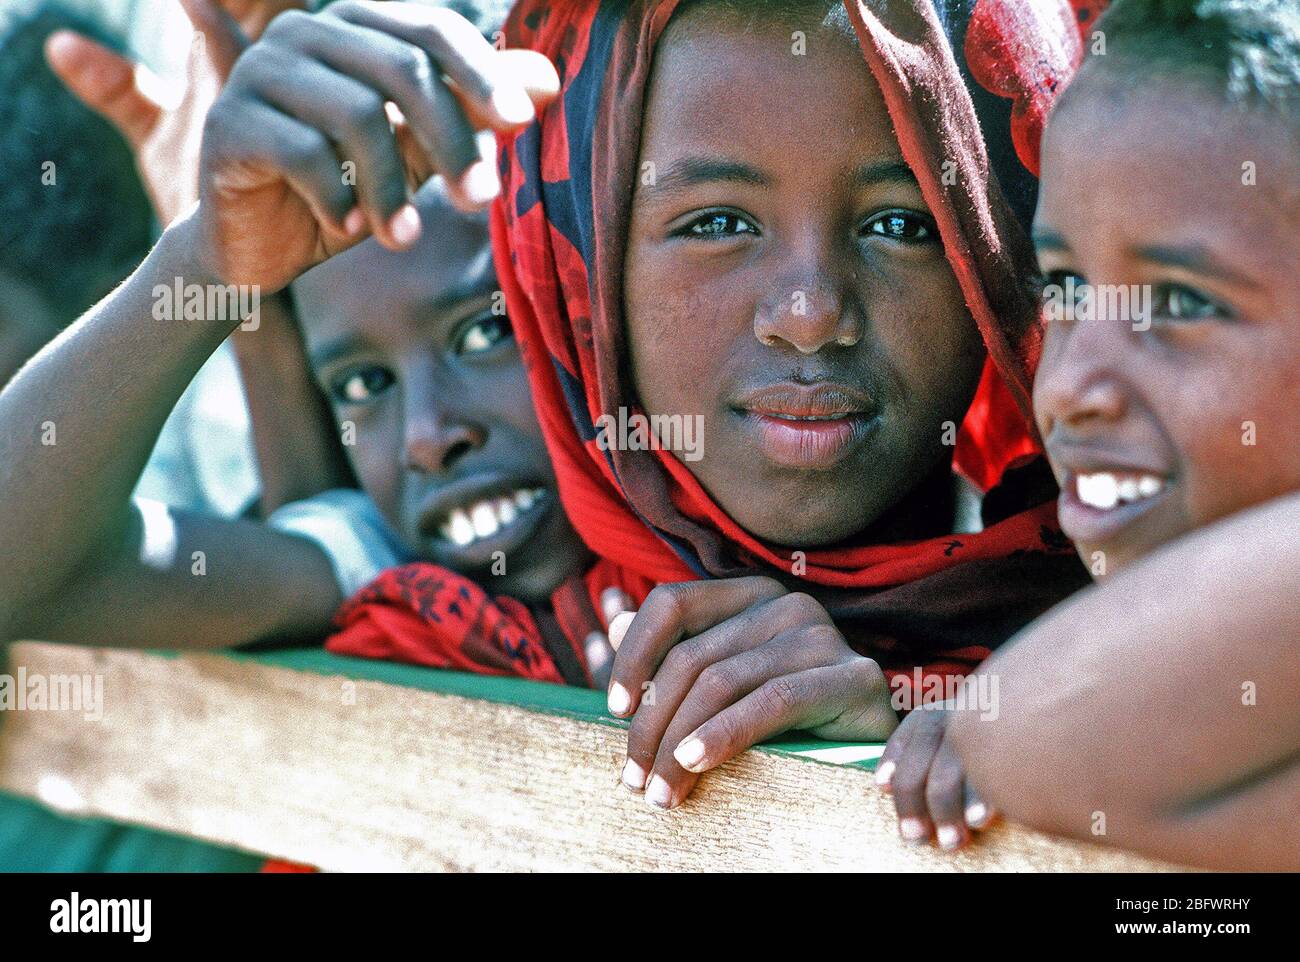 1993 - somalo bambini guardare i membri del Naval Mobile Battaglione di costruzione 1 (NMCB-1) come lavorano per migliorare una scuola locale durante la multinazionale soccorsi RESTORE HOPE. Foto Stock